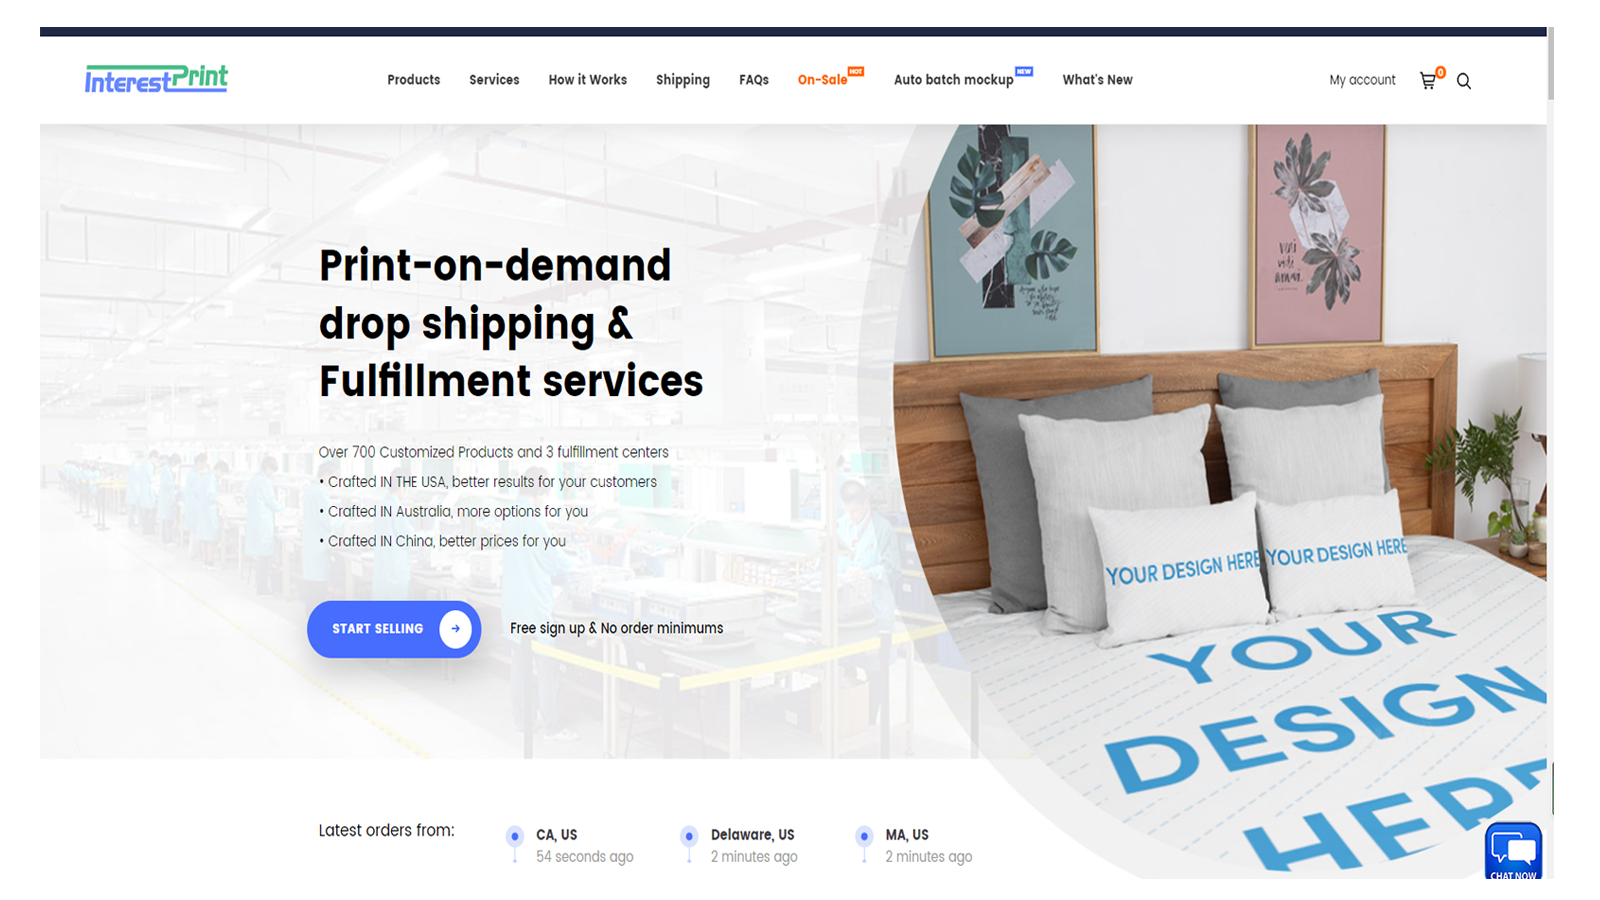 InterestPrint-Servicio de dropshipping e impresión bajo demanda